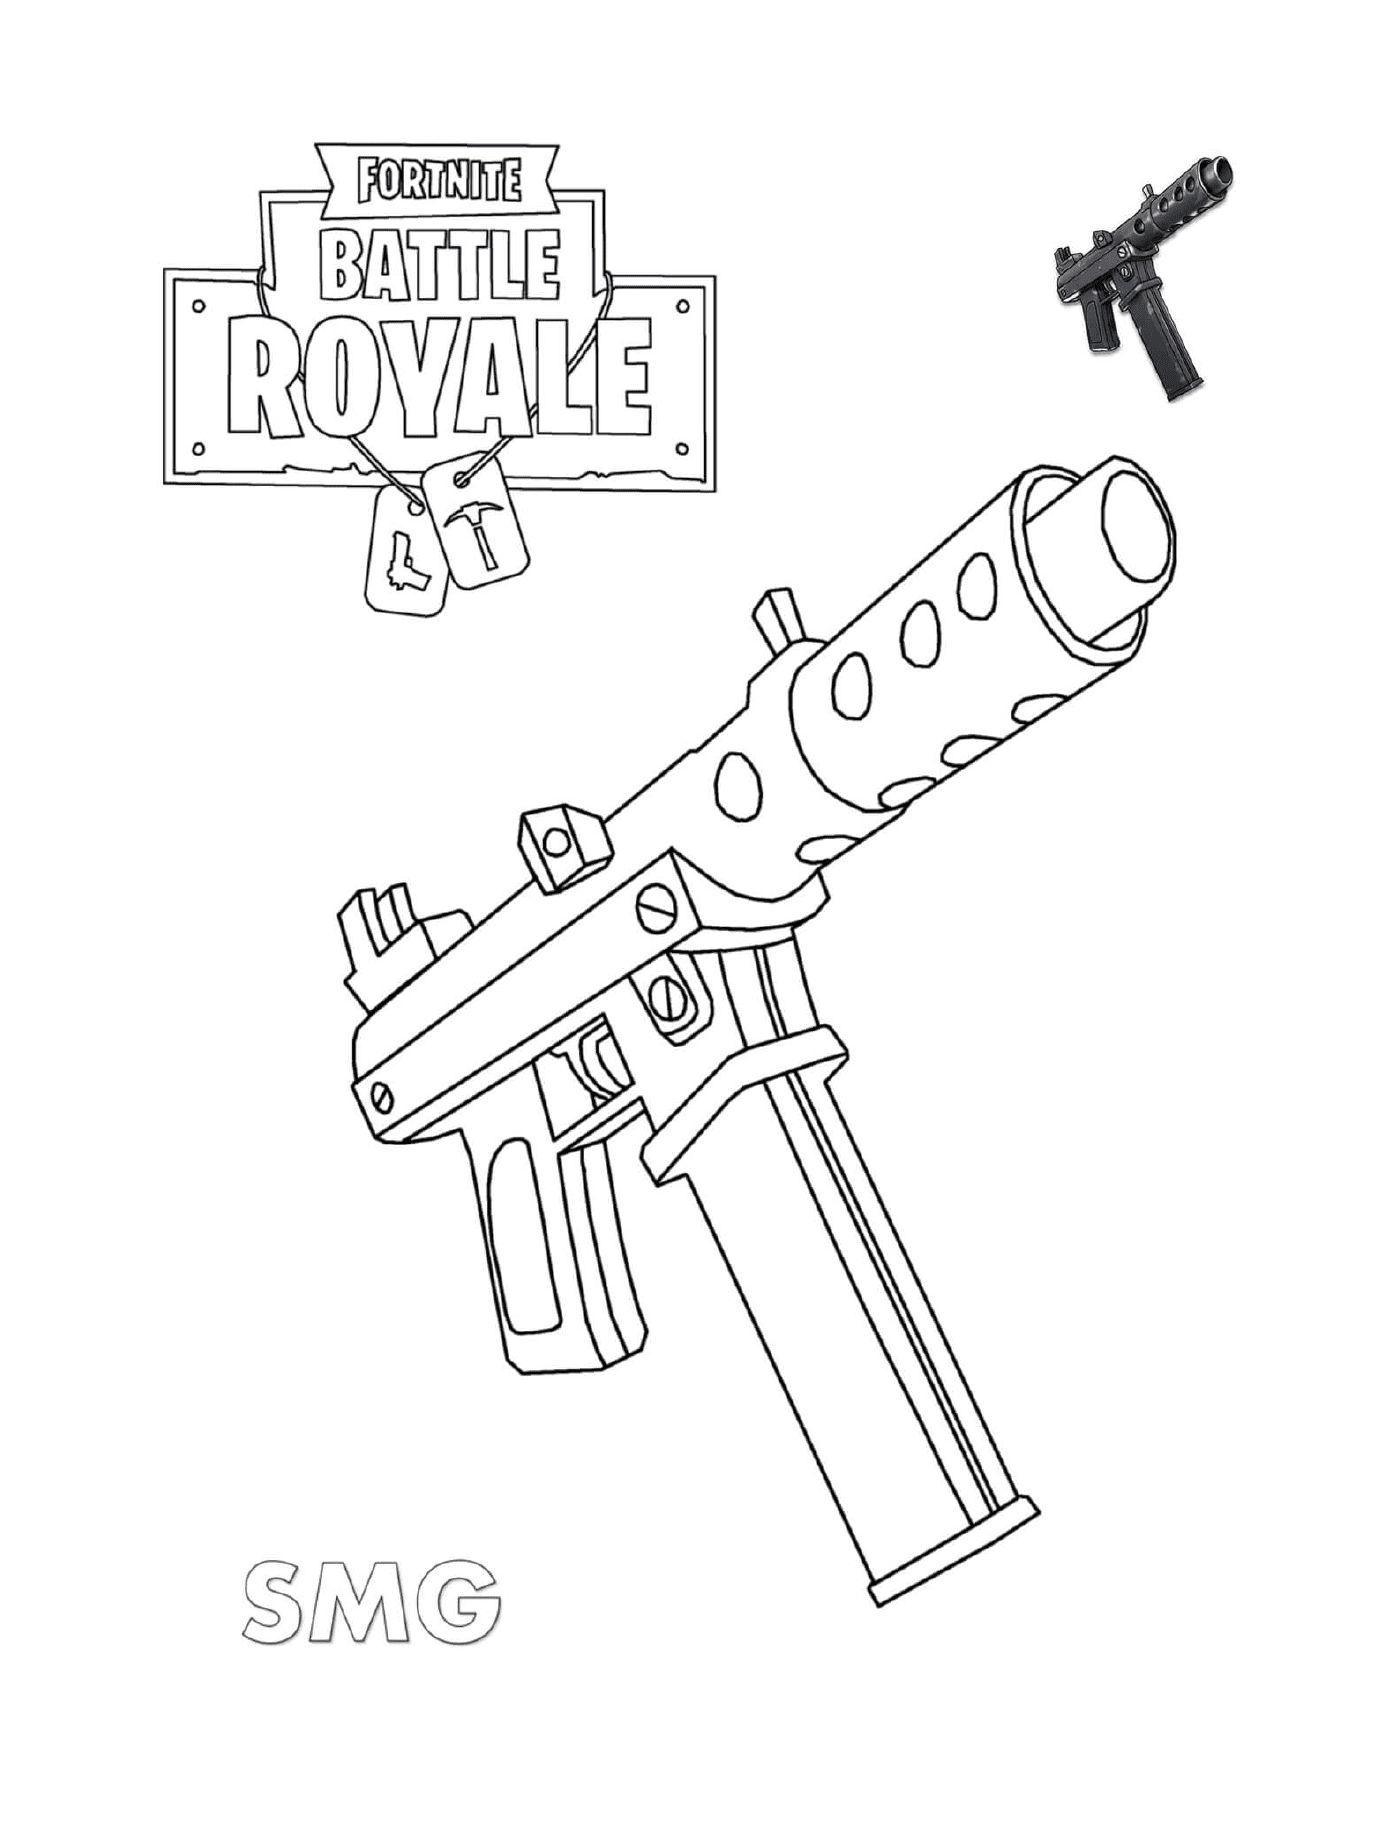  Pistola automática en Fortnite - AmarillasLatinas.net 